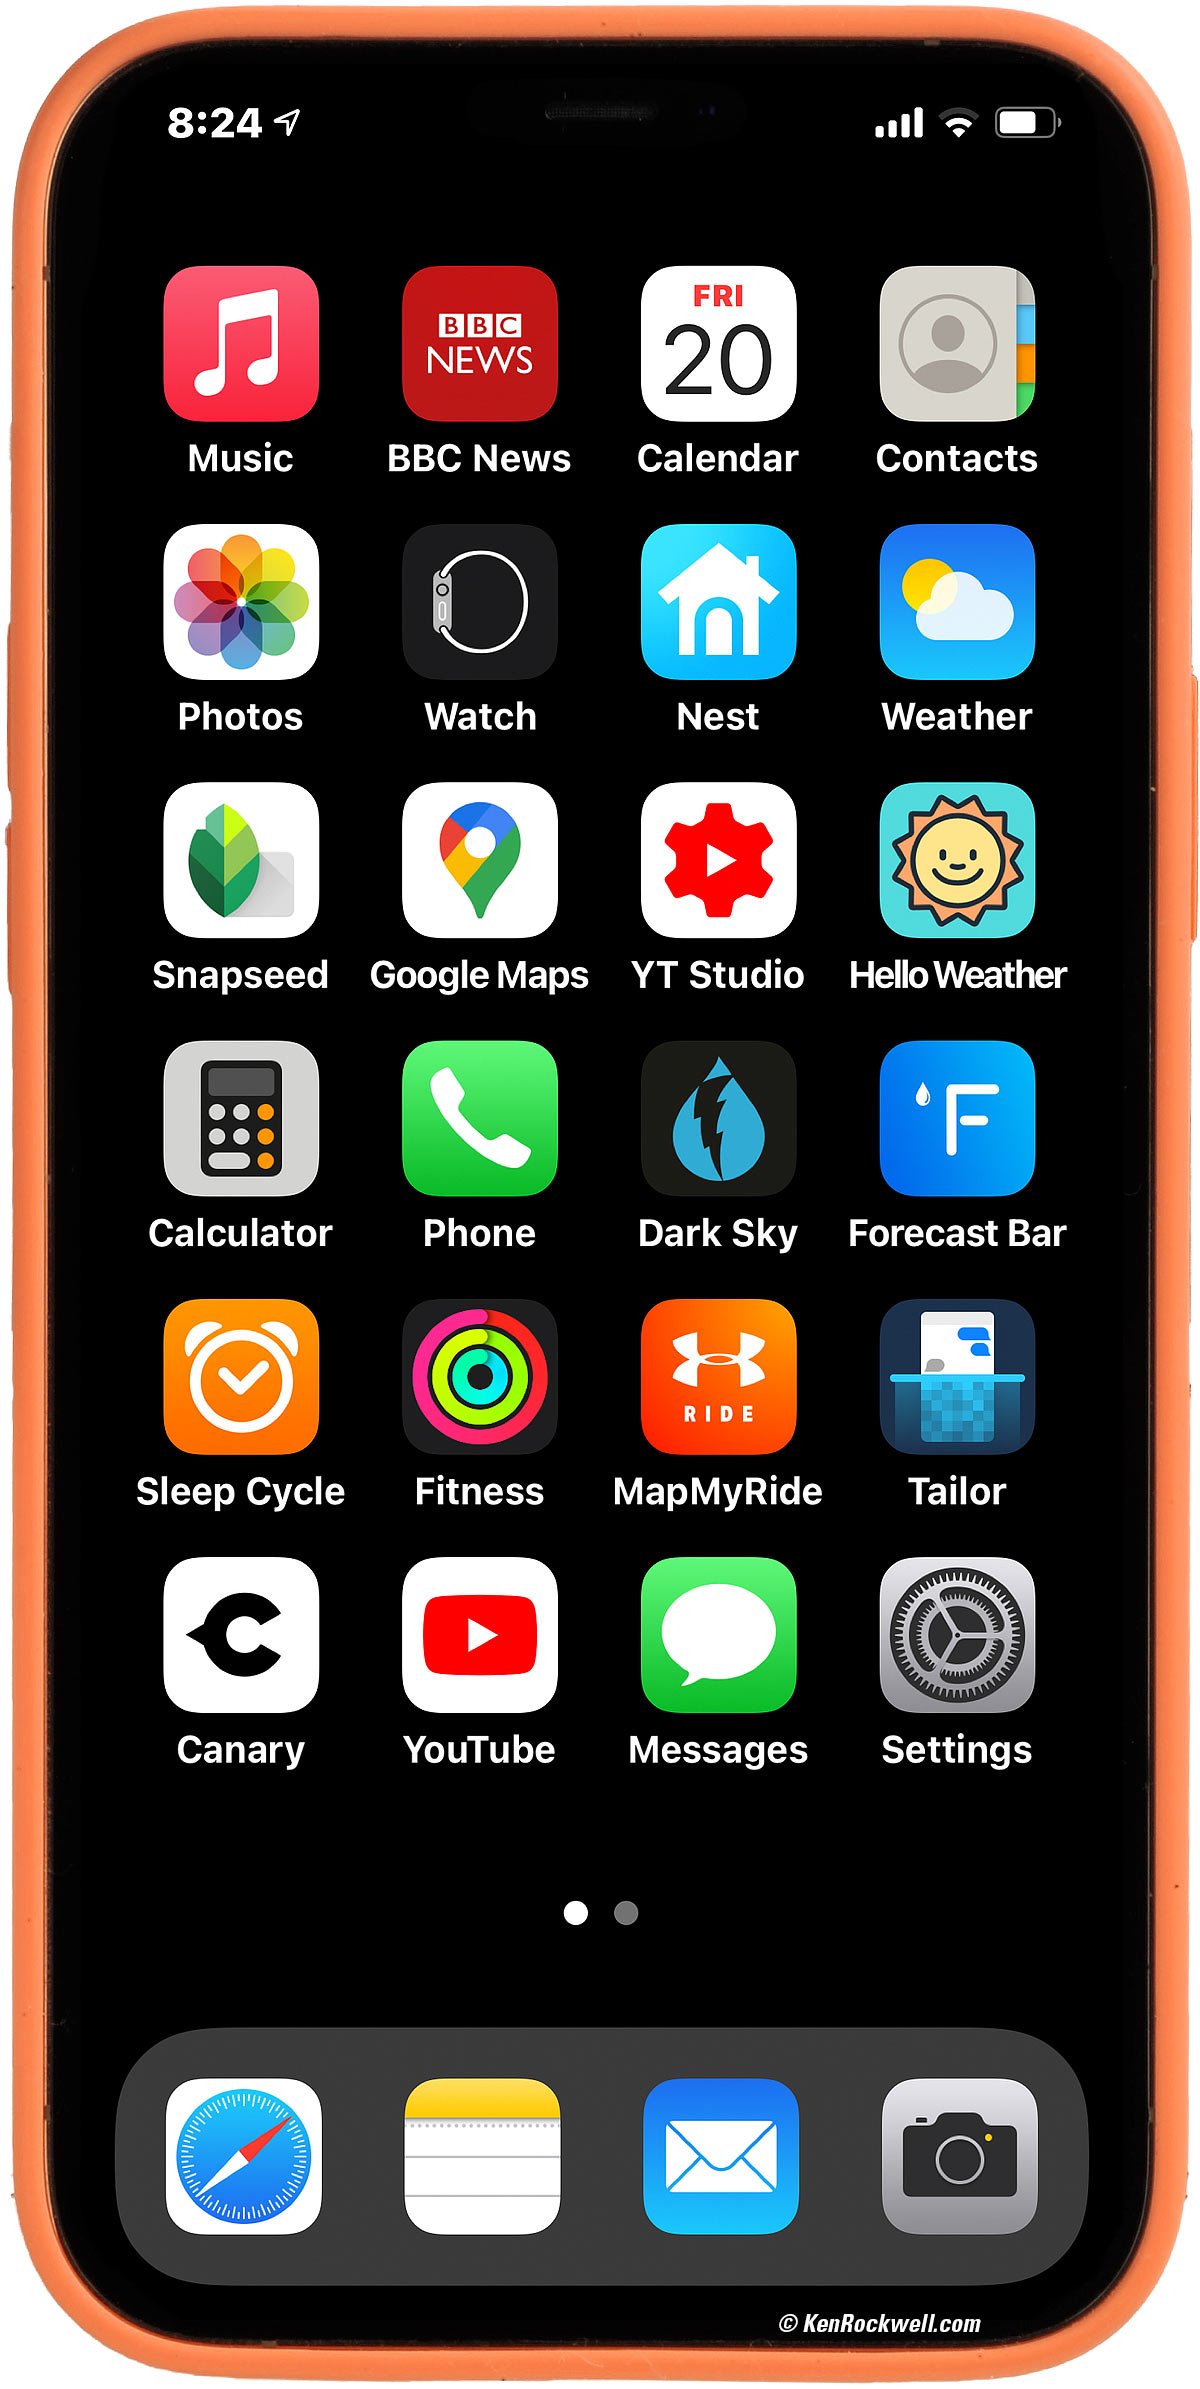 iPhone 12 Pro Max review: Max display, max battery, max camera